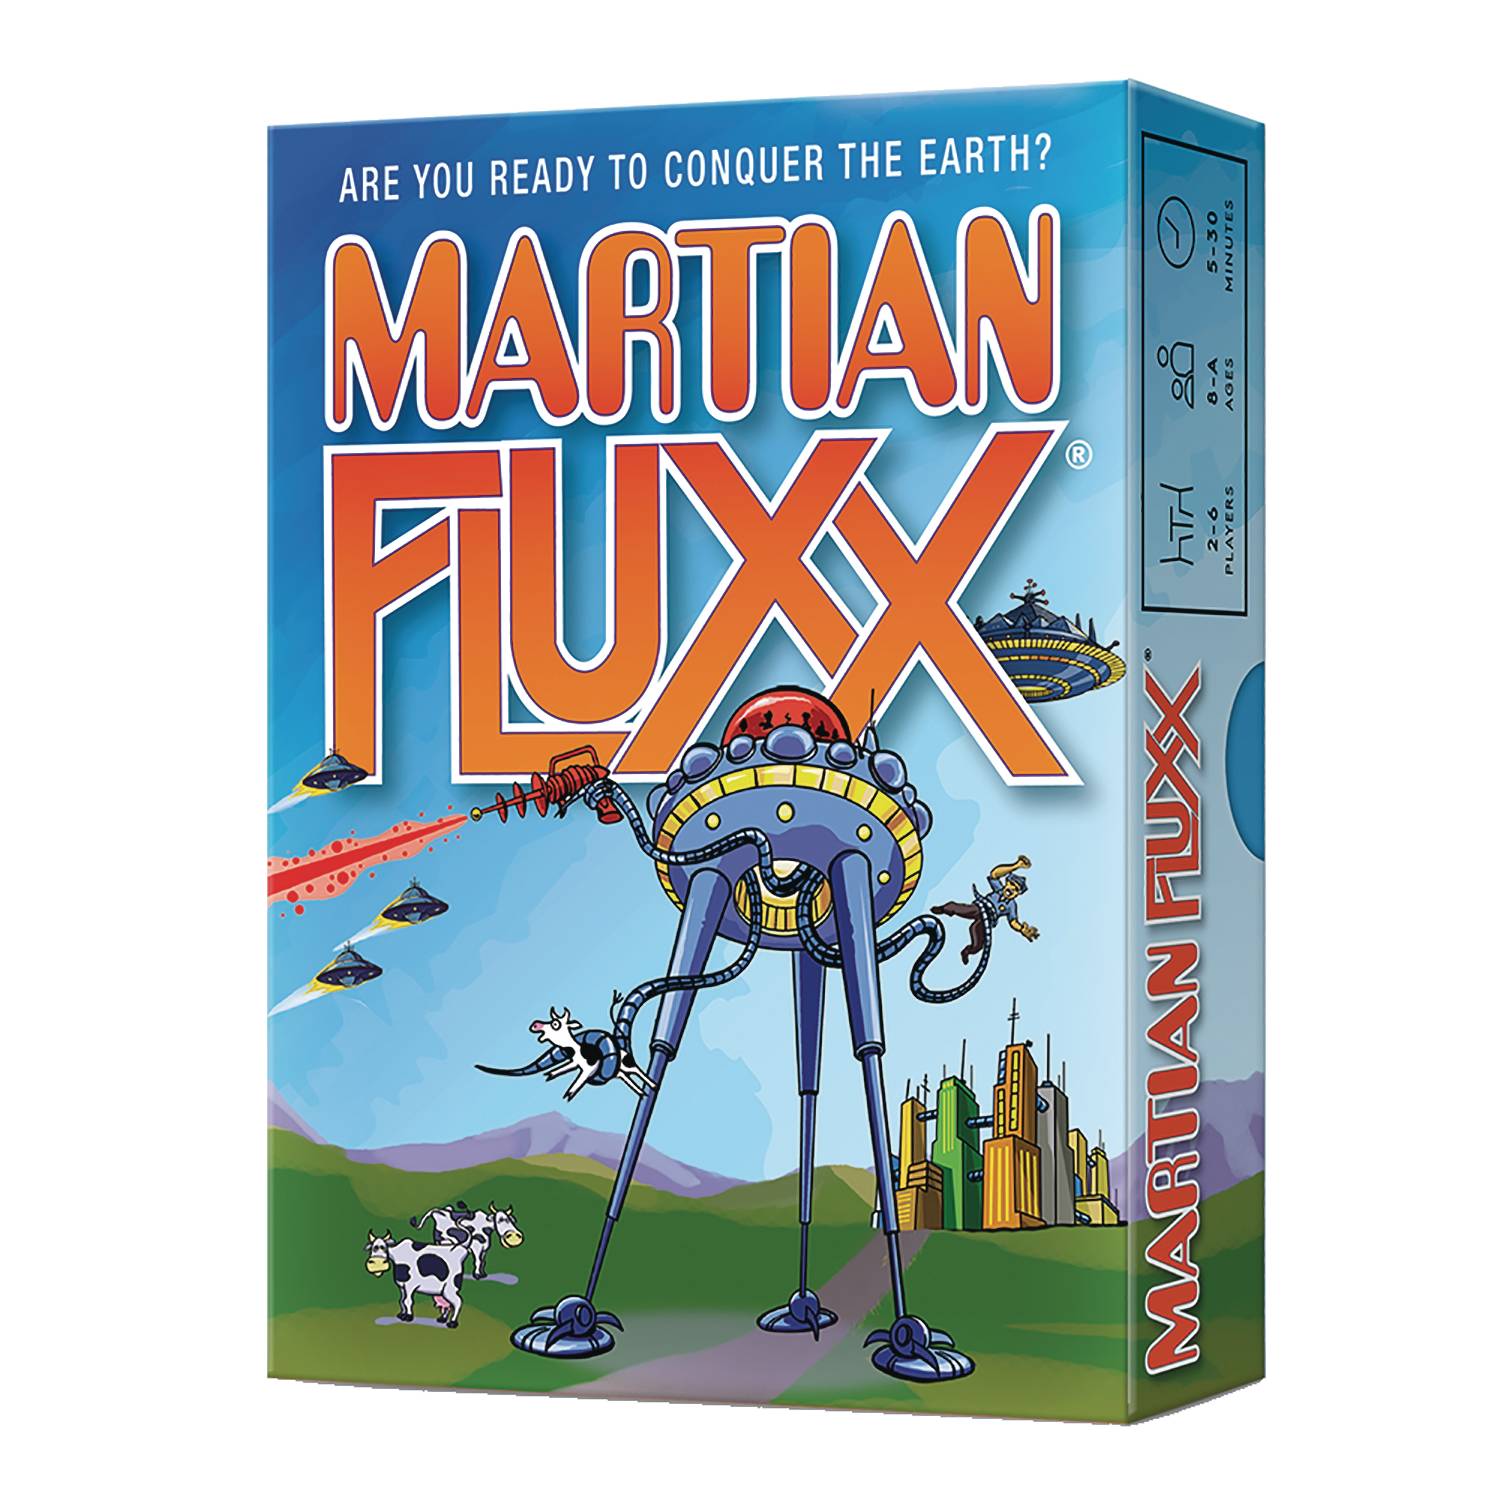 Martian FLUXX